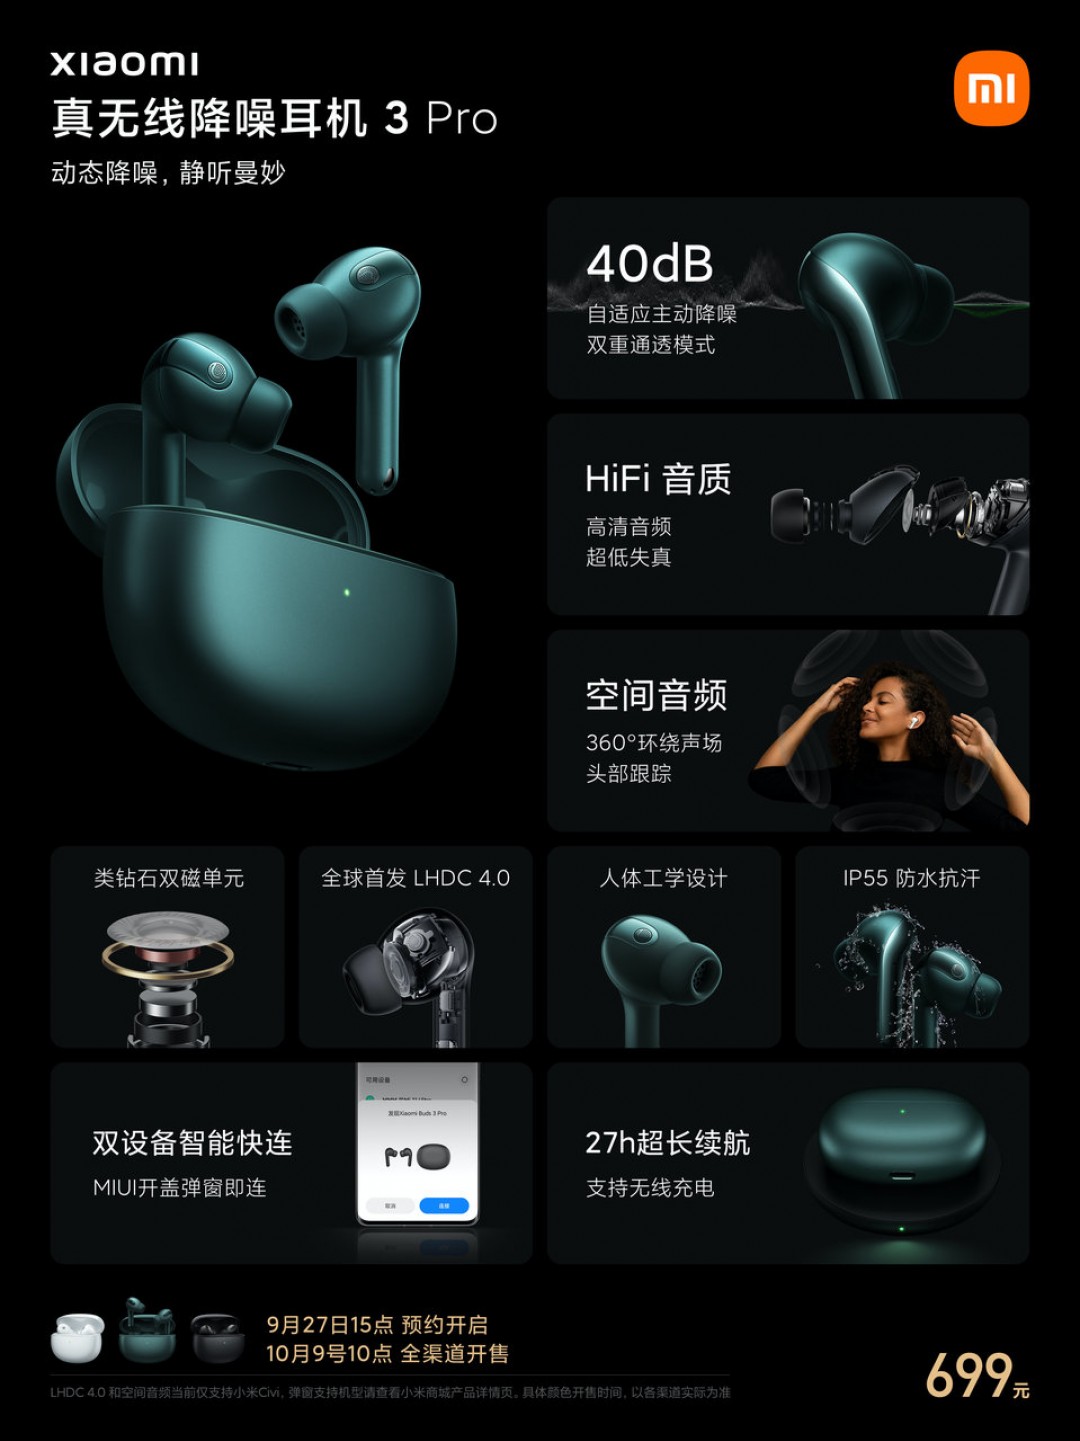 Xiaomi Watch 2 dévoilée avec une application tierce, un nouveau casque TWS avec réduction du bruit de 40 dB est également lancé